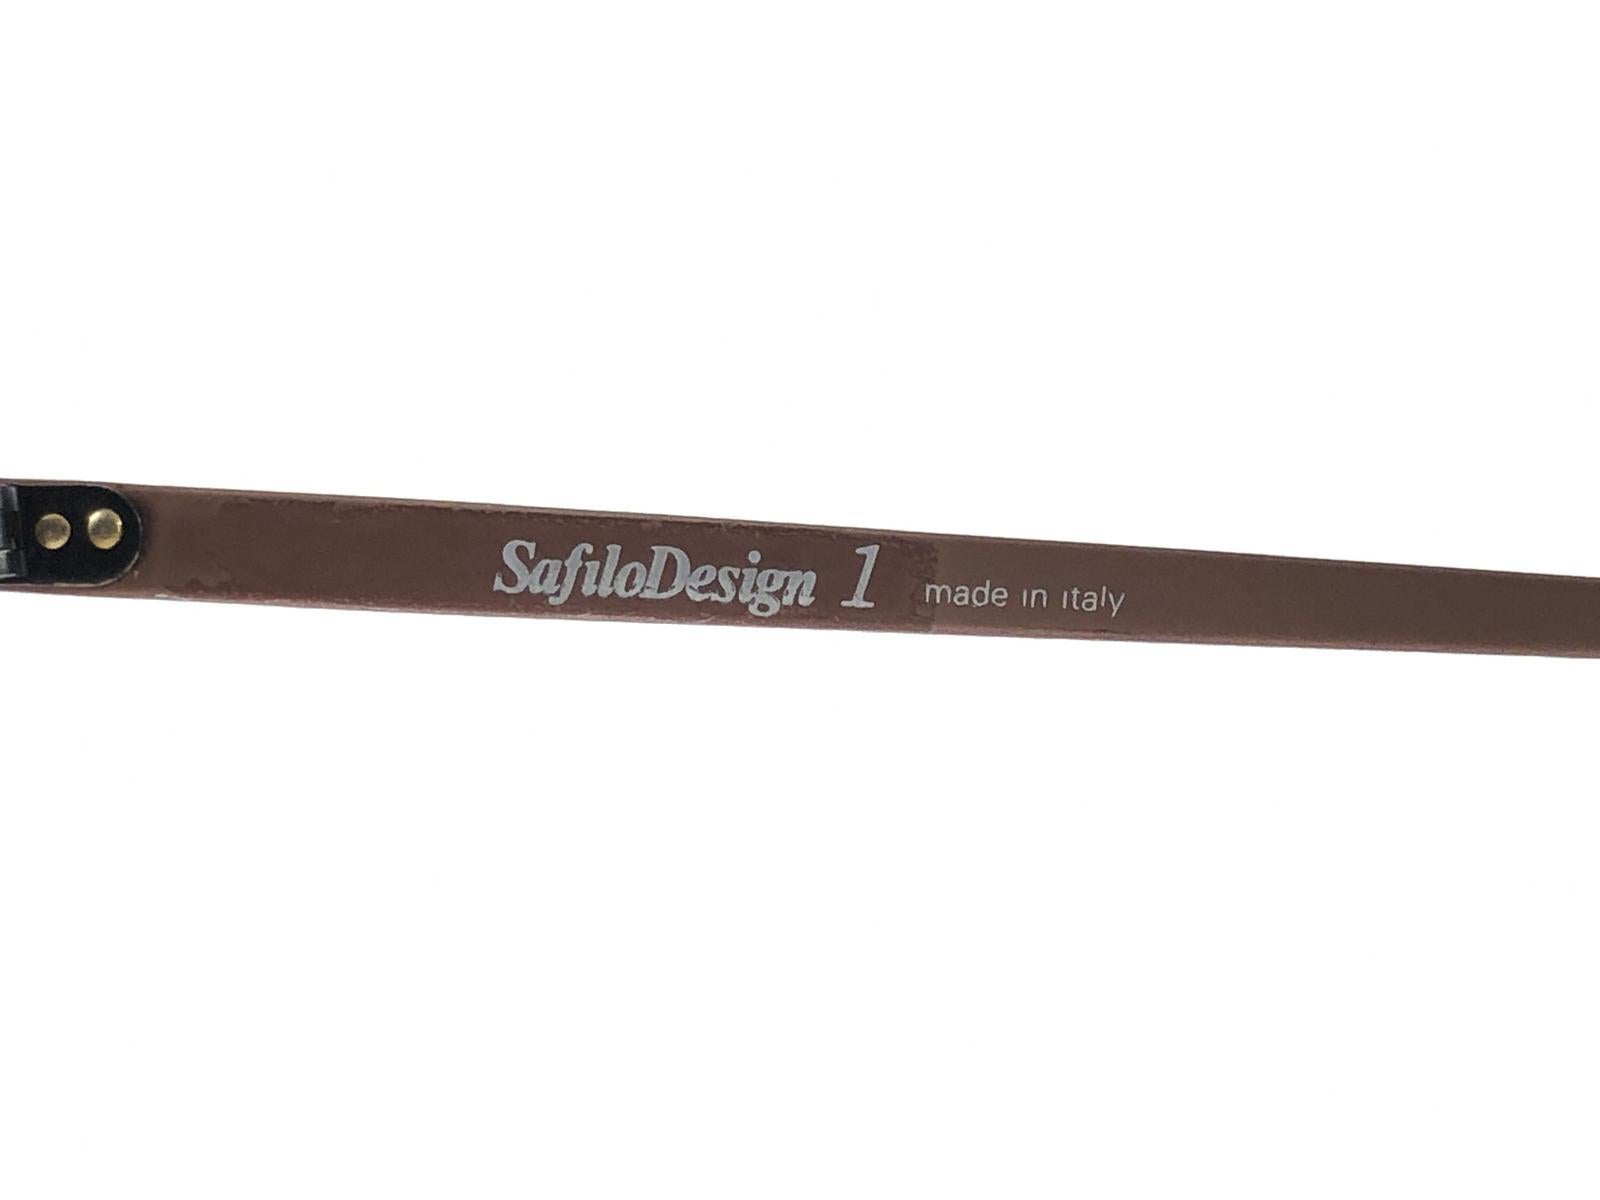 New Vintage Safilo Design 1 172 Copper Mate Aviator 80's Sunglasses Madein Italy 1